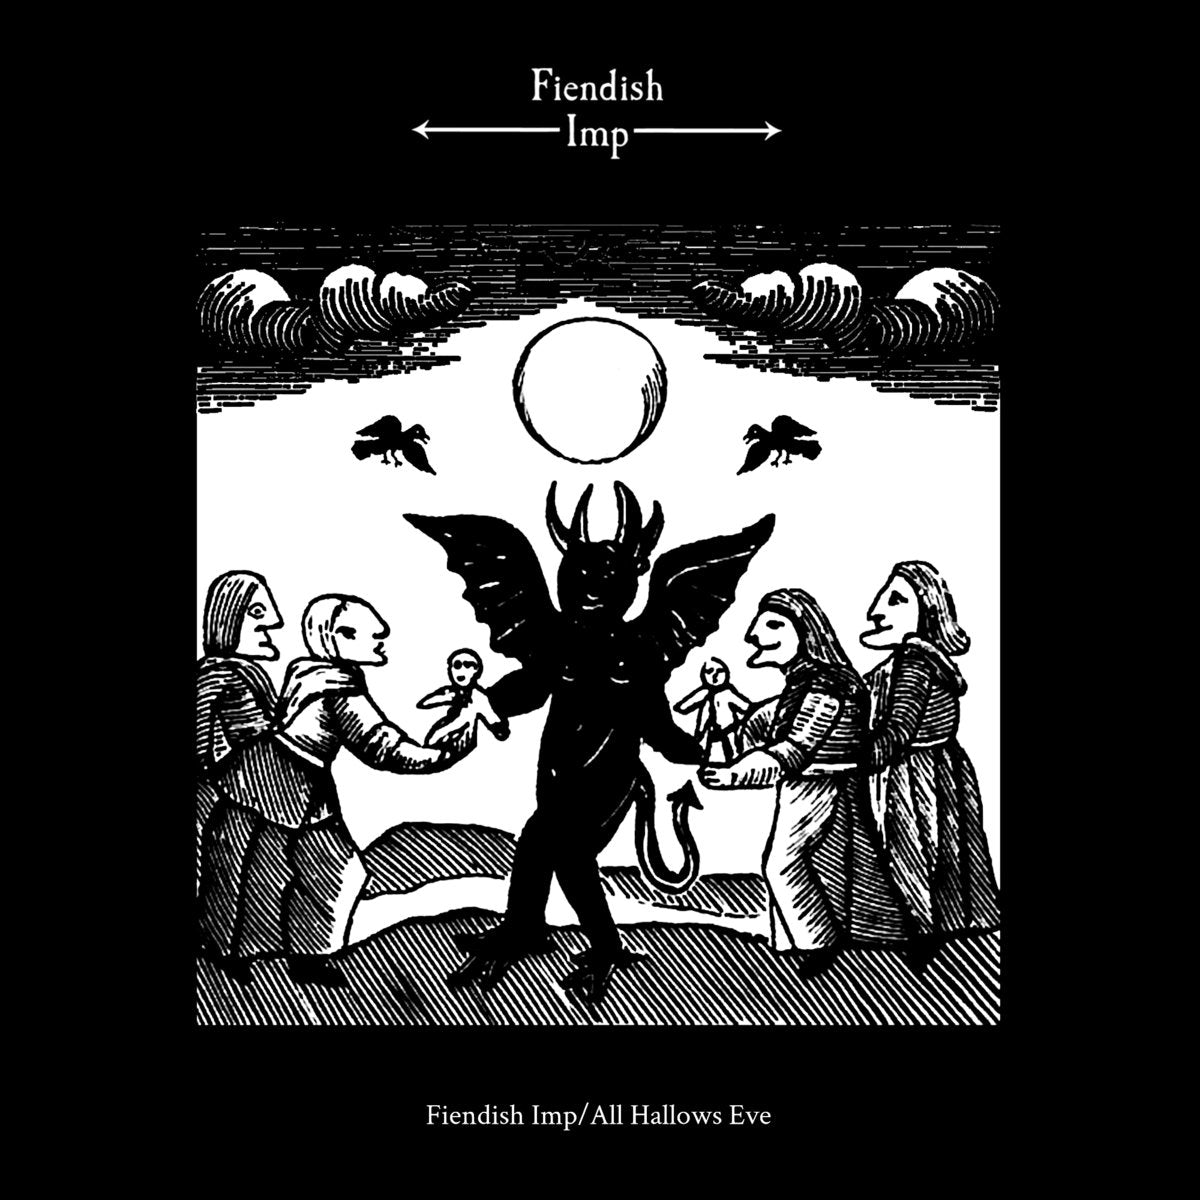 [SOLD OUT] FIENDISH IMP "Fiendish Imp / All Hallows Eve" Vinyl LP